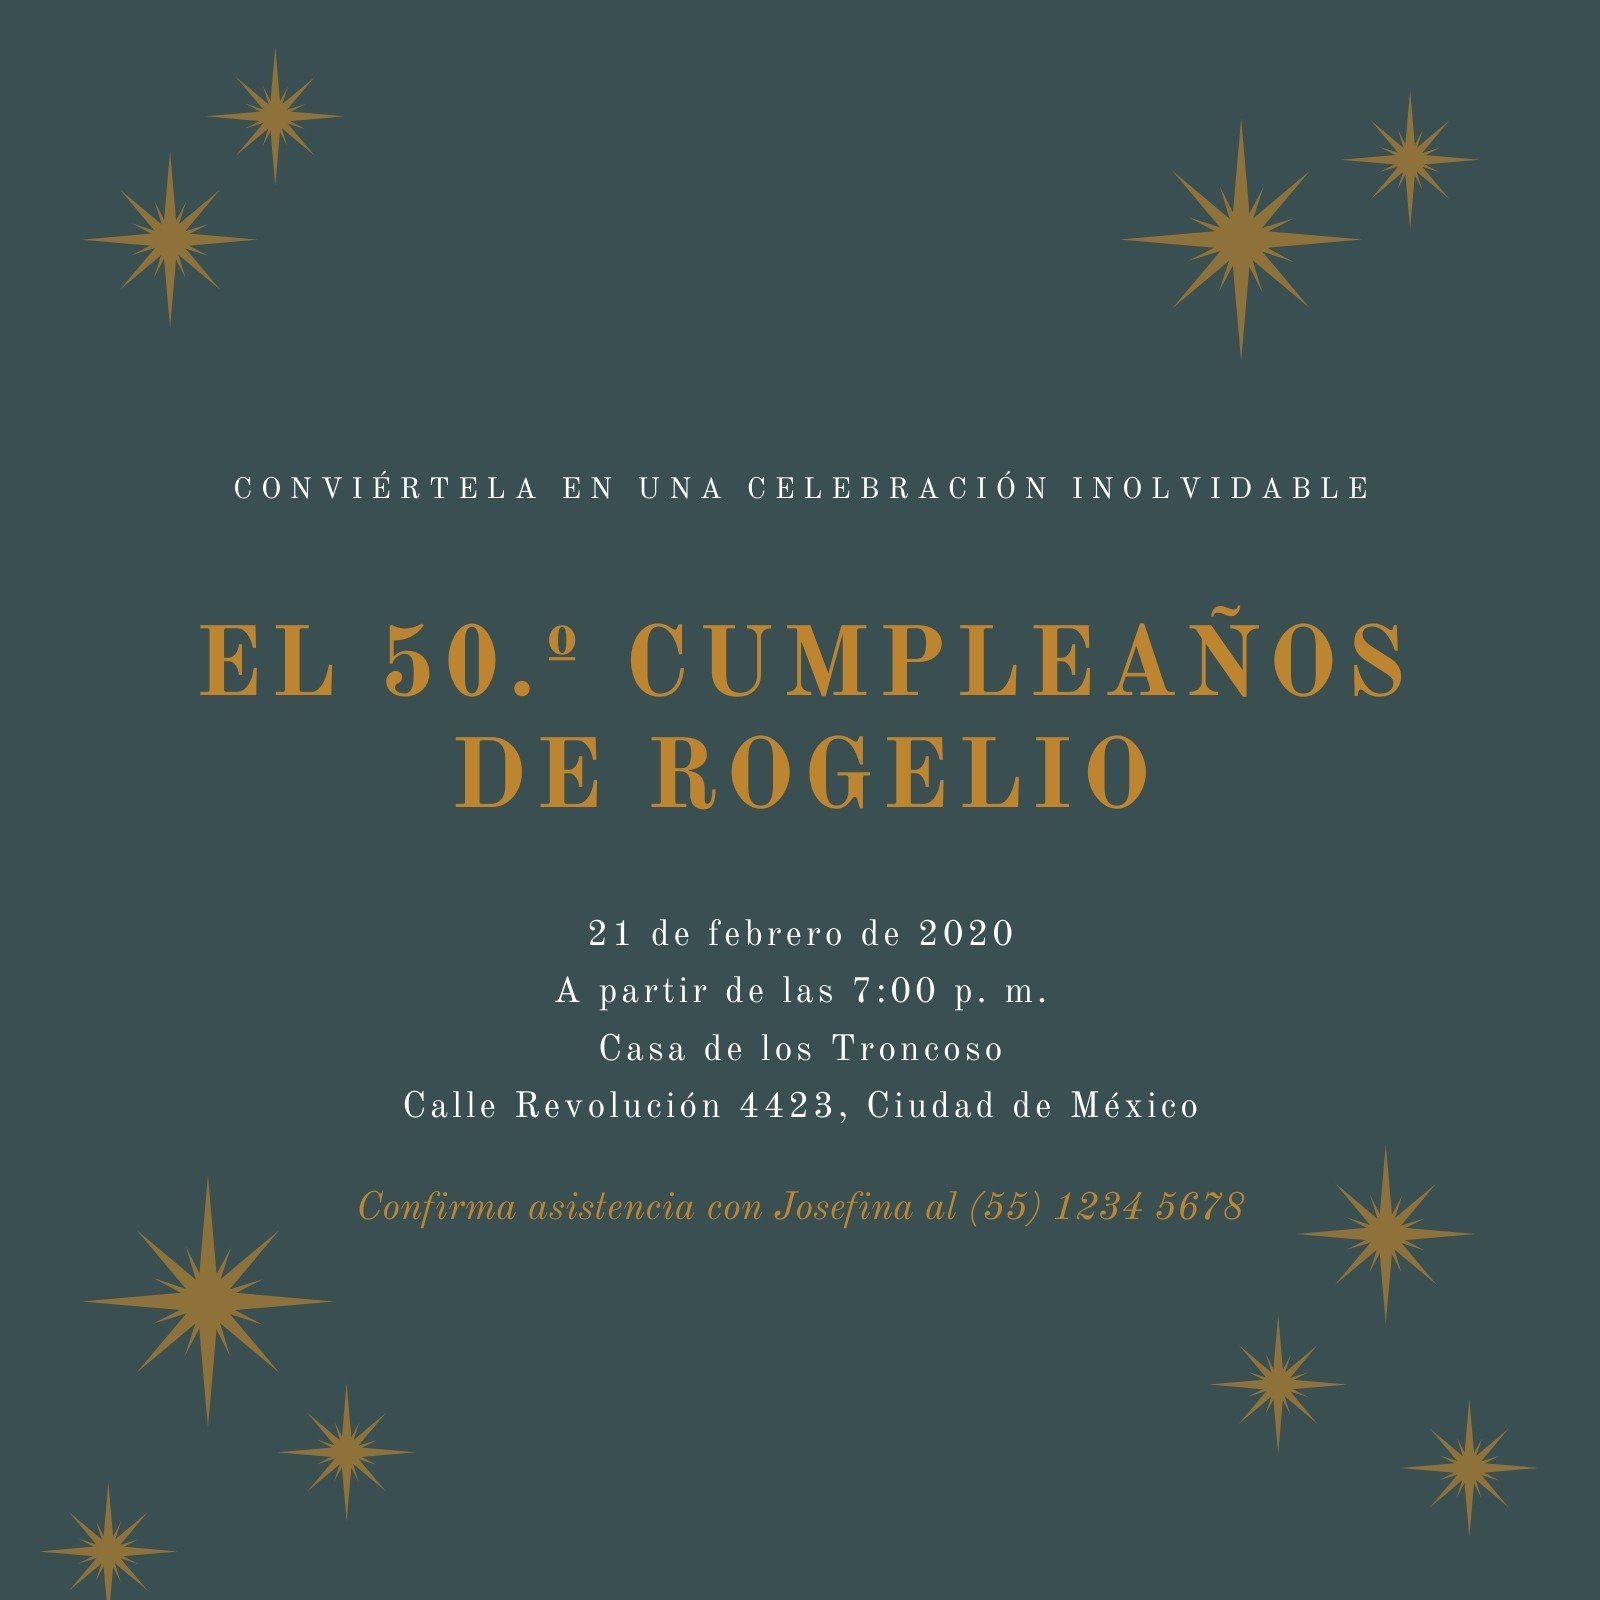 Invitación De 50 Años Mujer, SPANISH 50th Birthday Invitation, 50